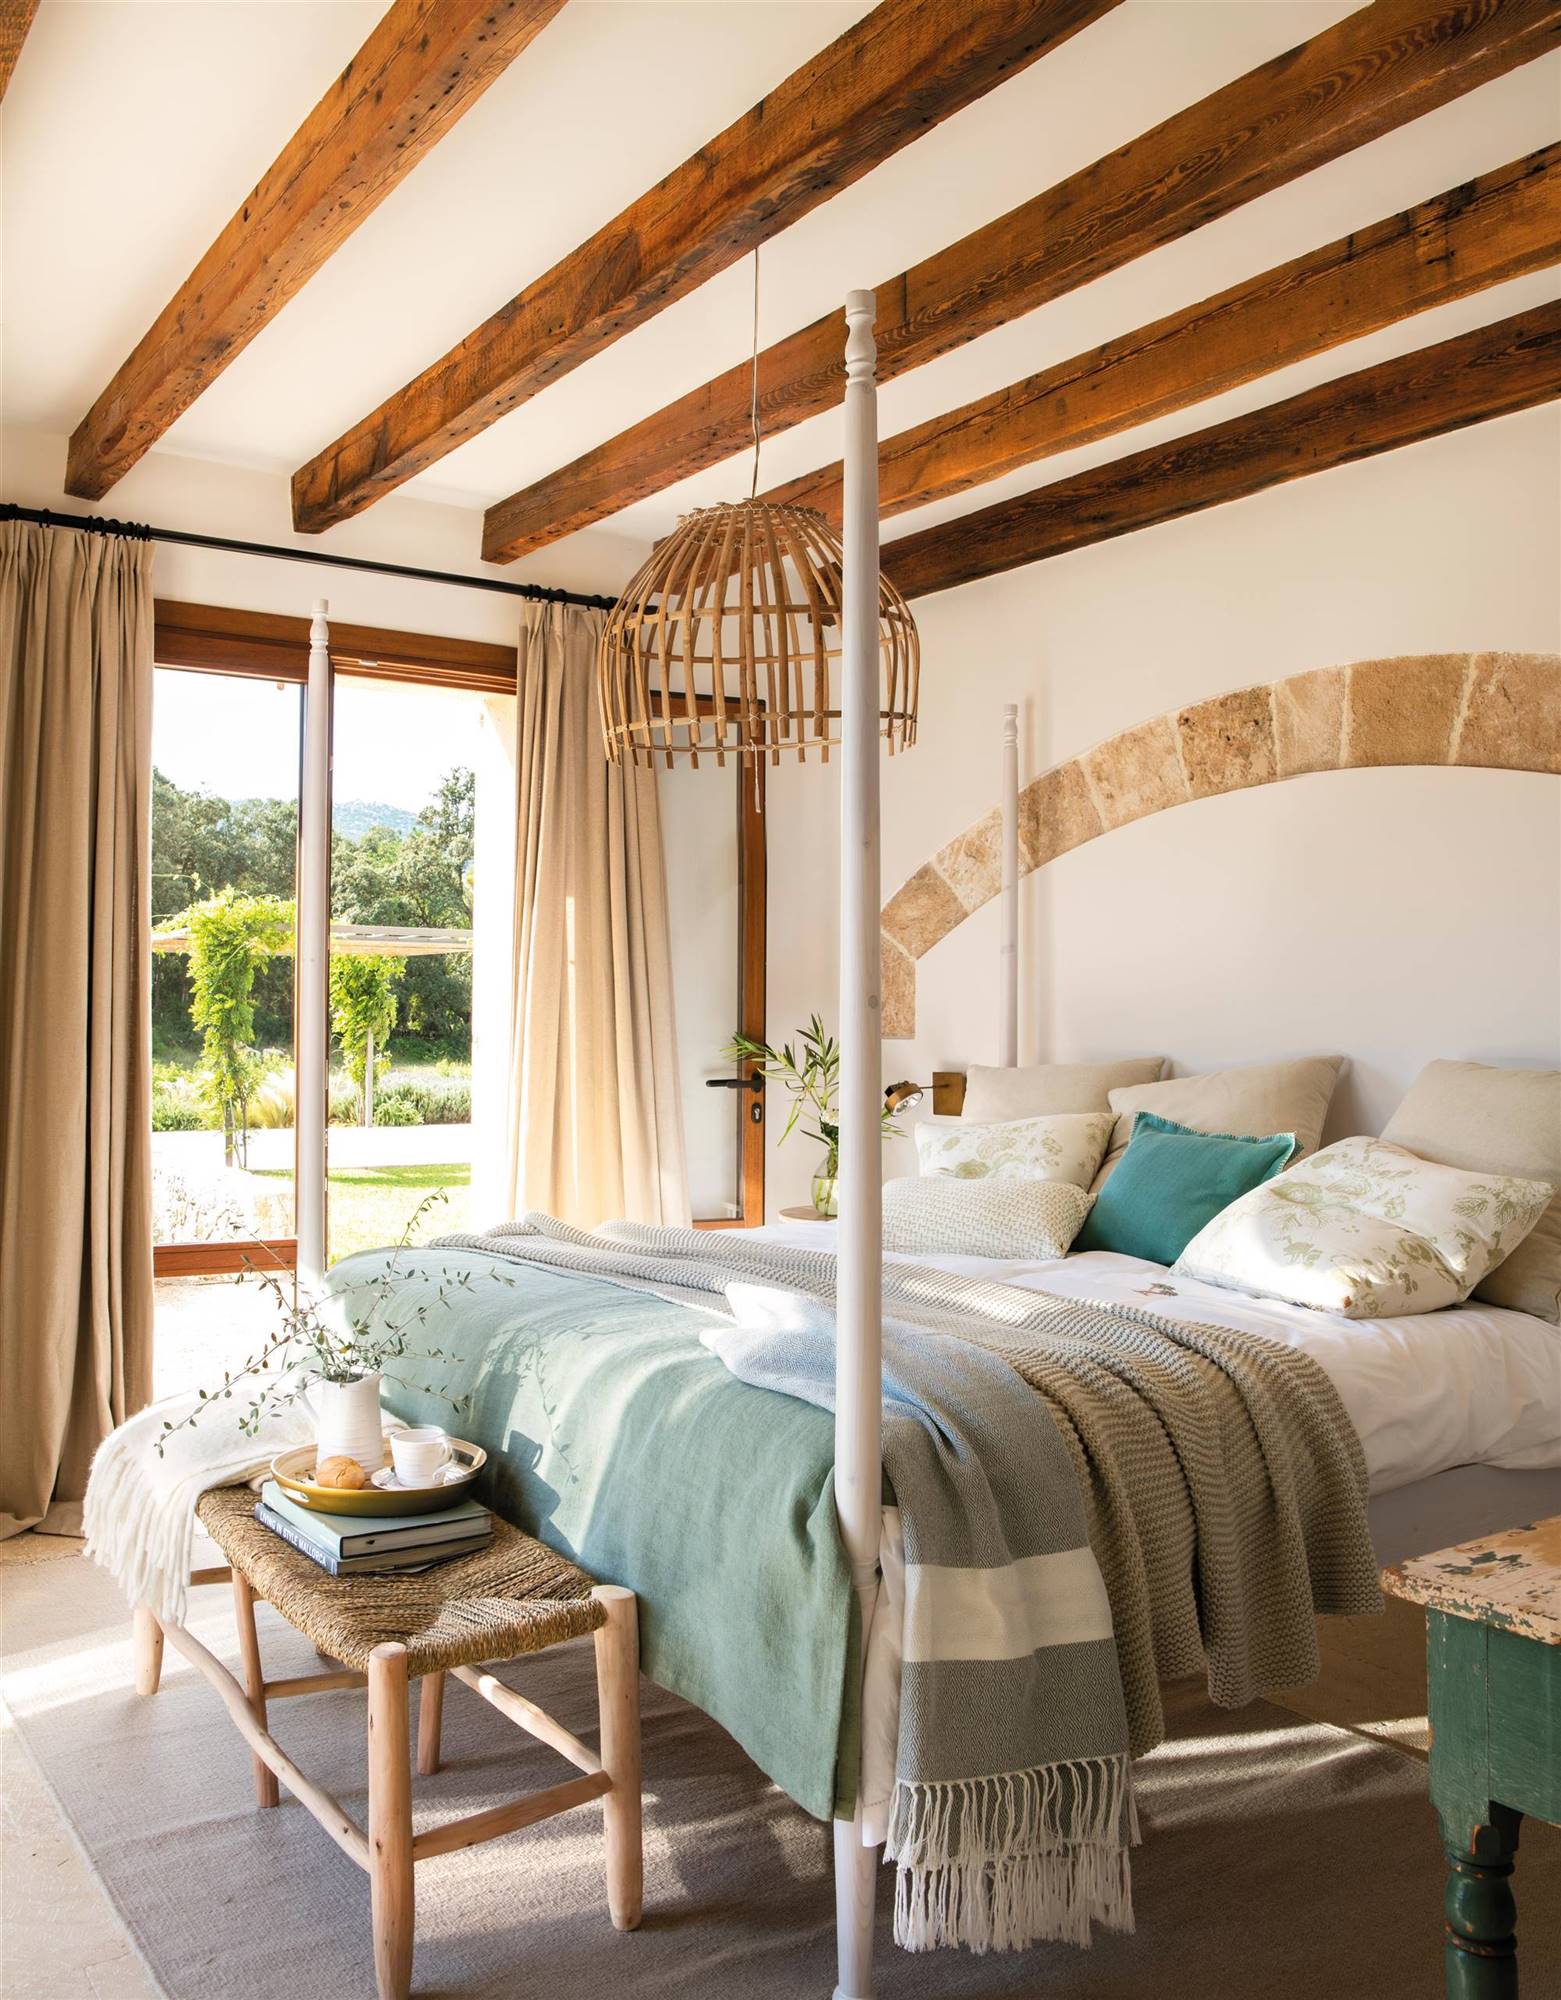 Dormitorio con vigas de madera y revestimiento en arco en zona de cabecero.